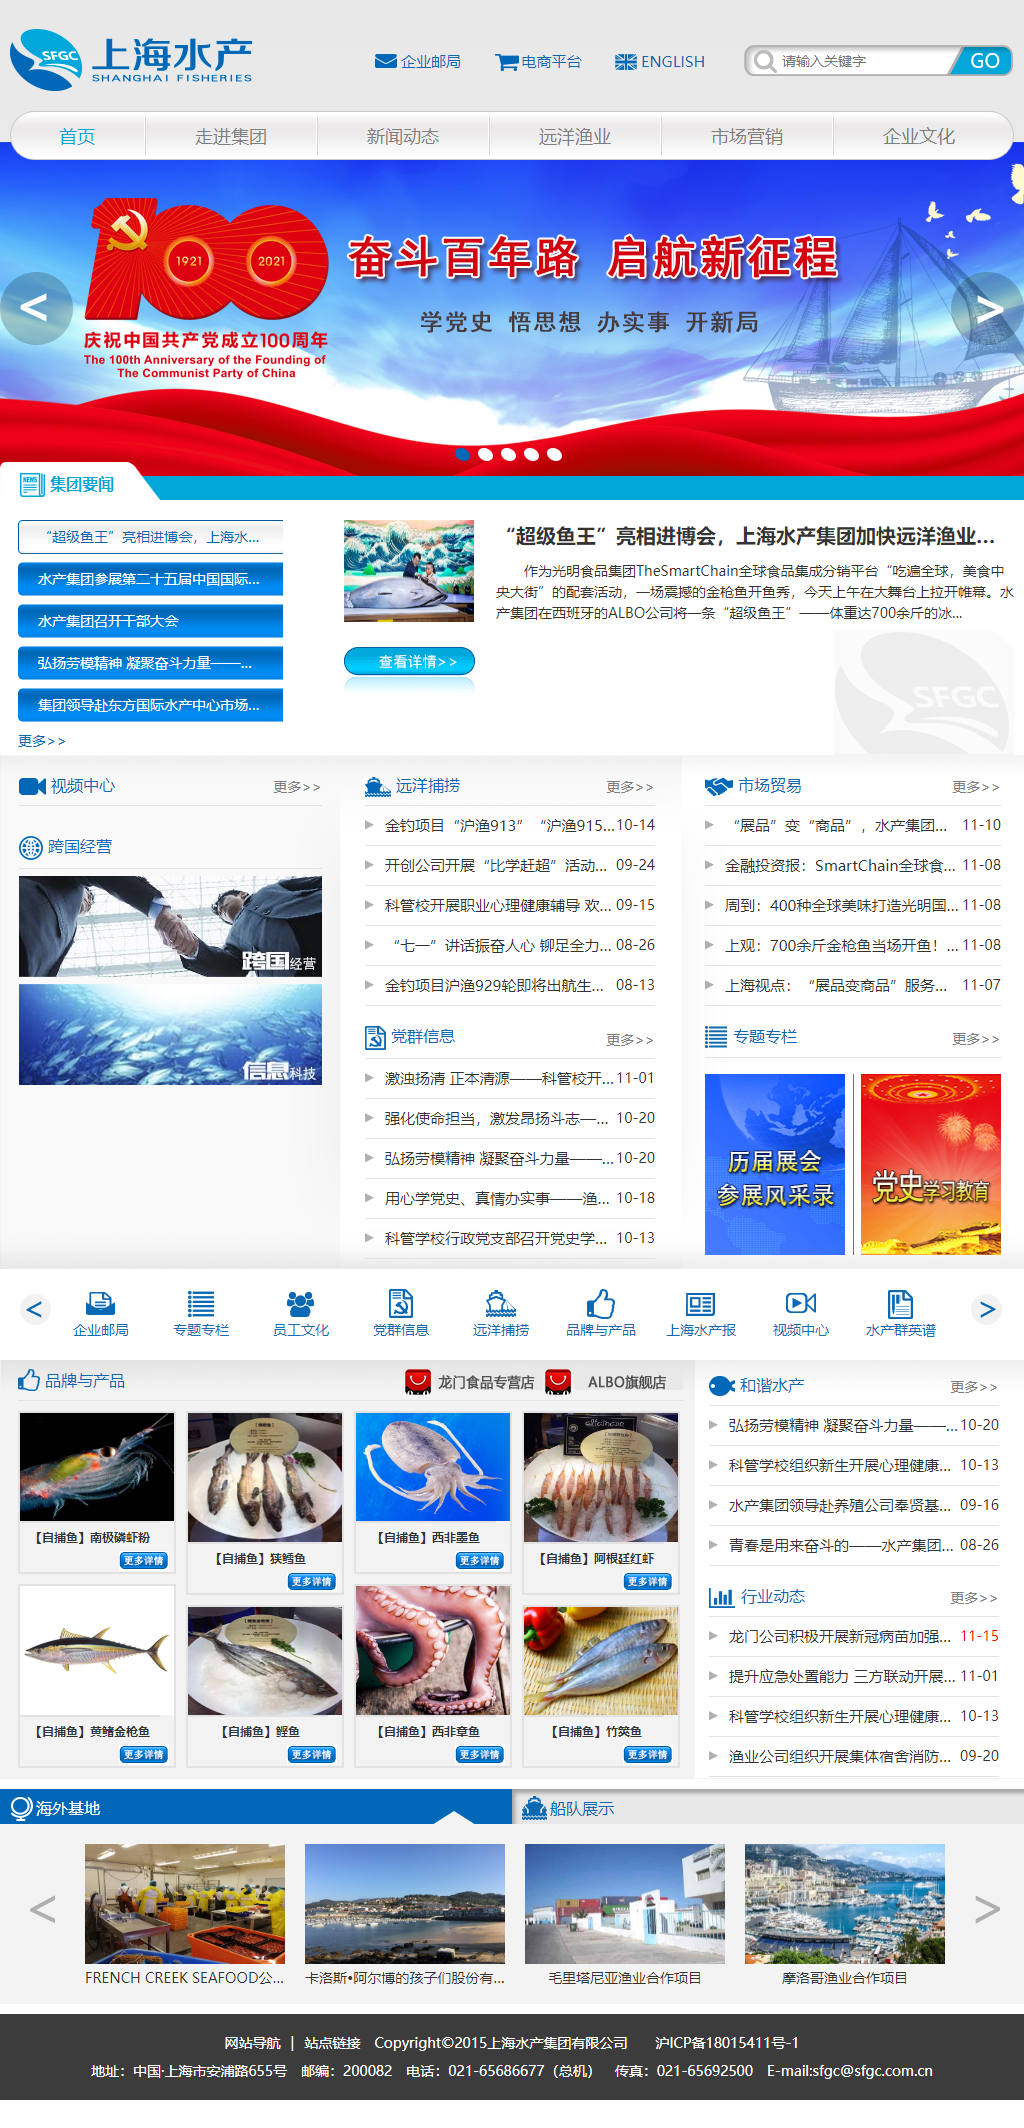 上海水产集团有限公司网站案例